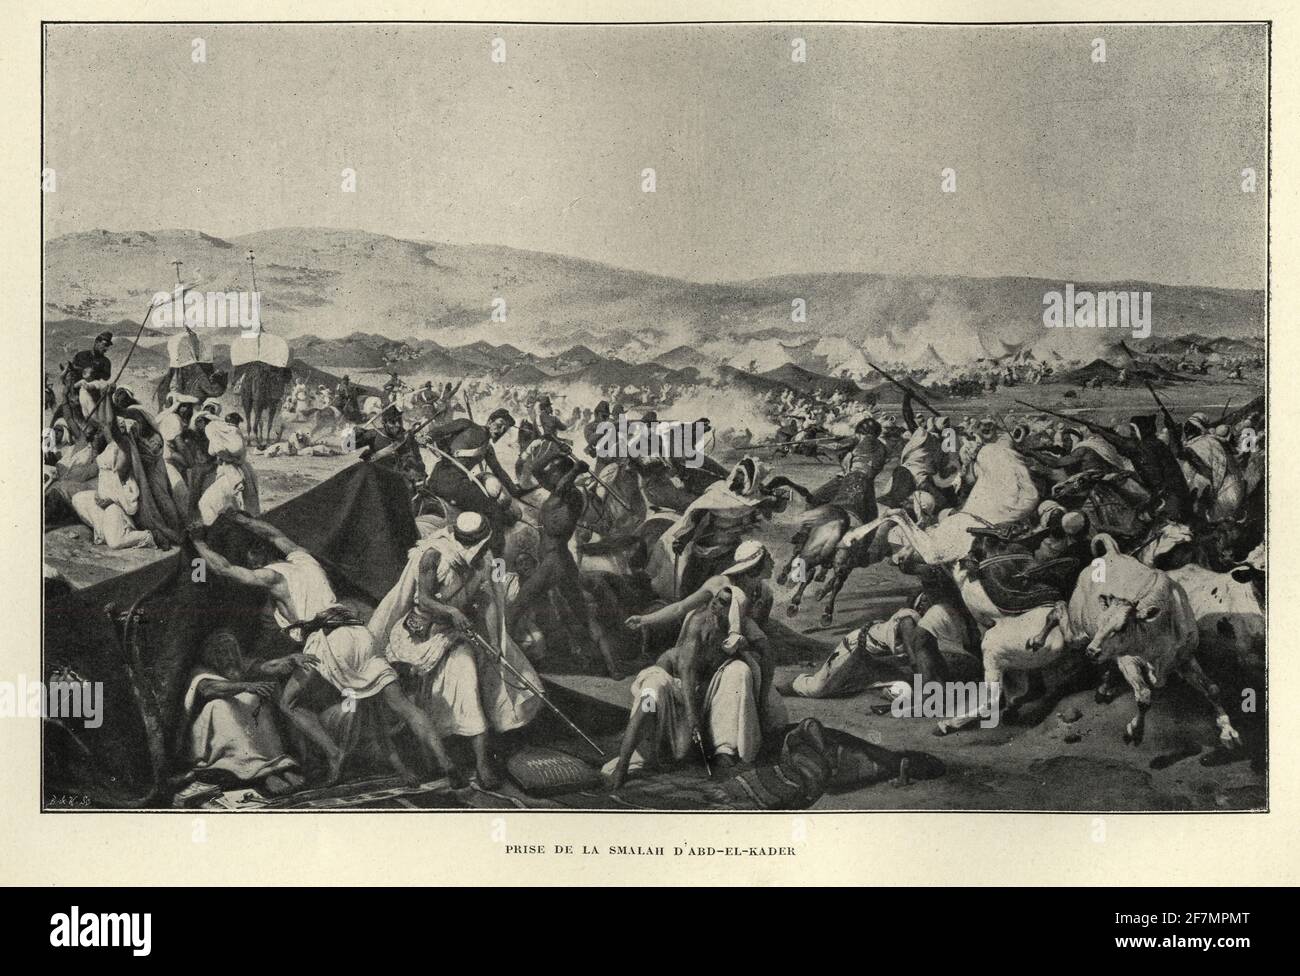 La bataille de la Smala a été menée en 1843 entre la France et les combattants algériens de la résistance lors de la conquête française de l'Algérie. Banque D'Images